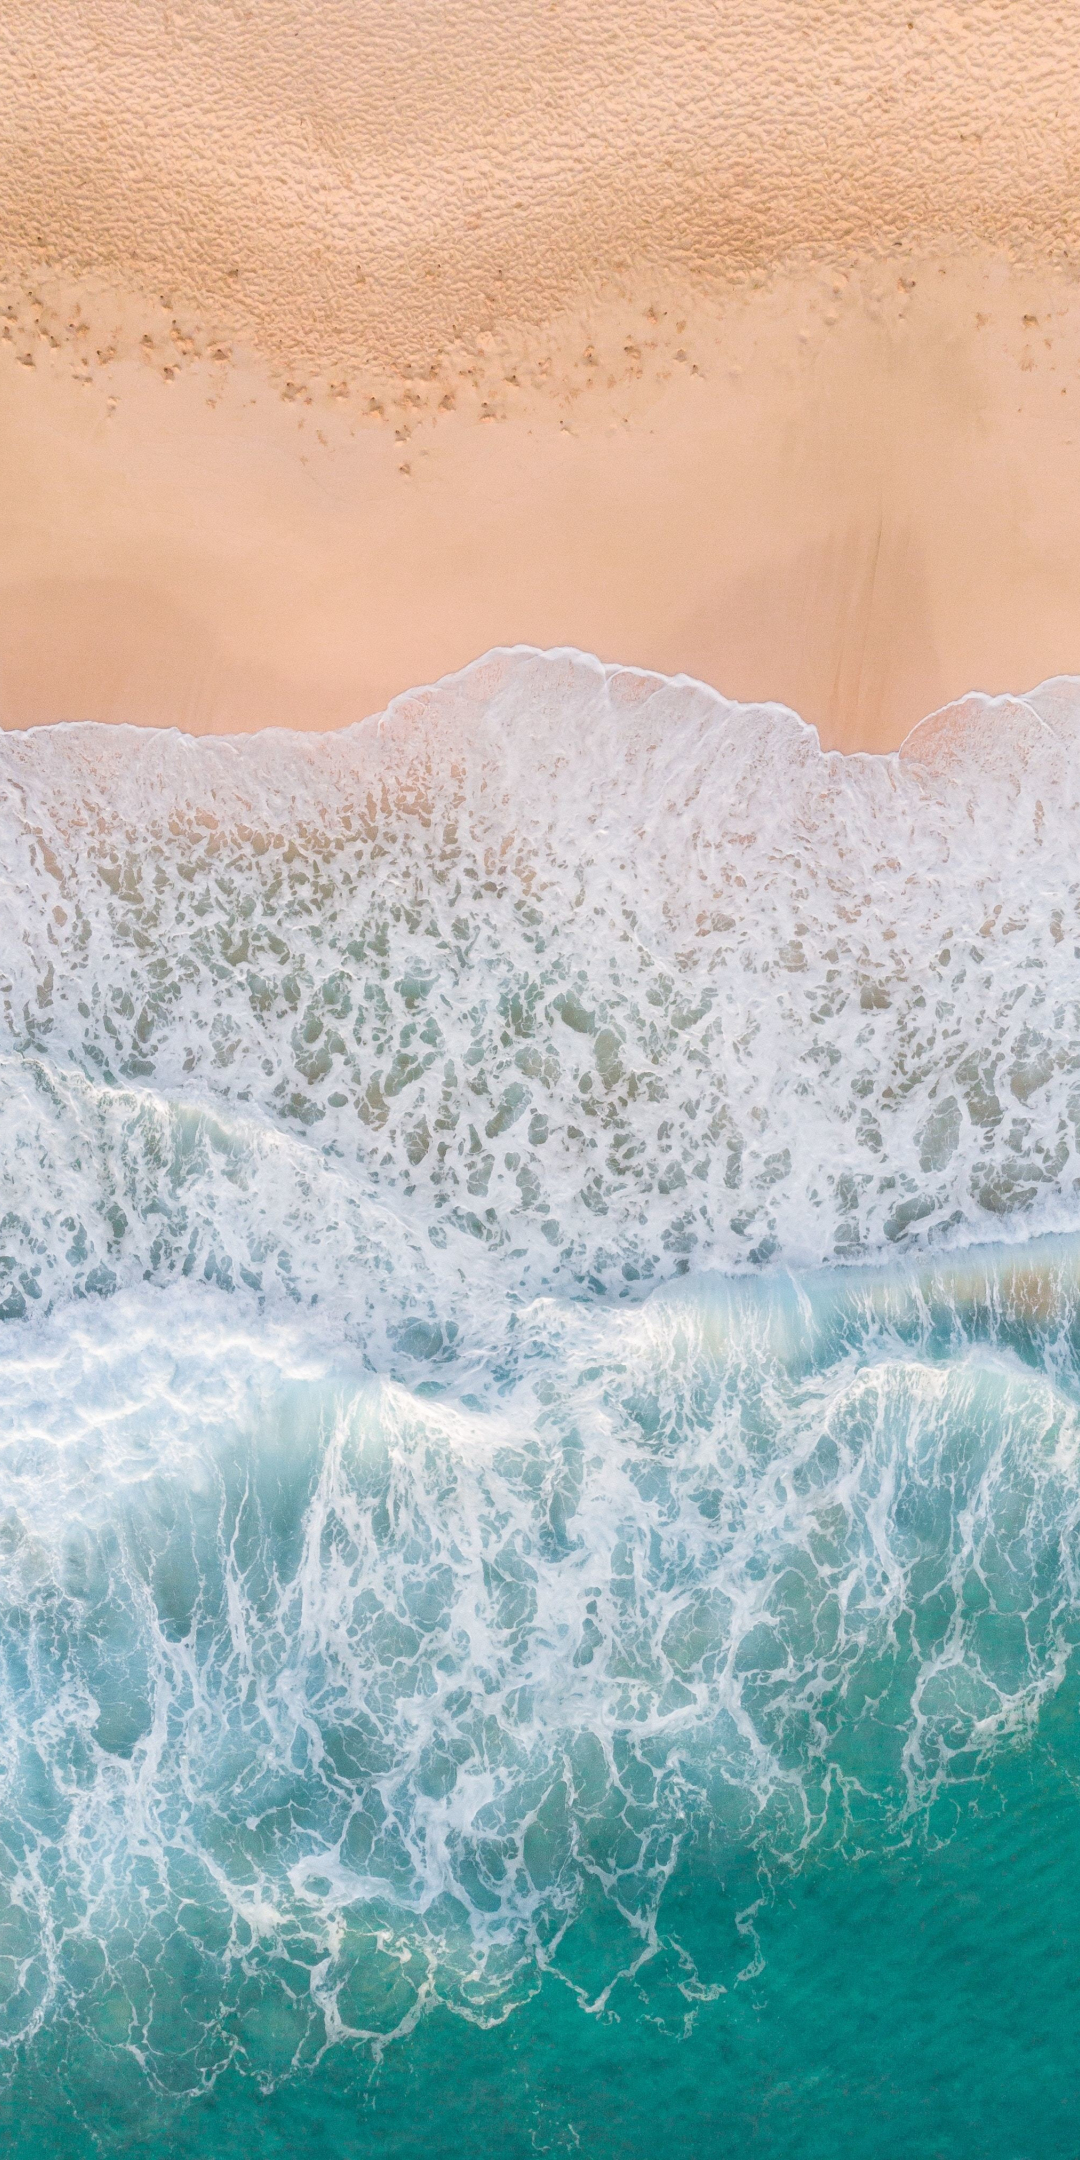 Waves, beach, aerial view, sea, 1080x2160 wallpaper